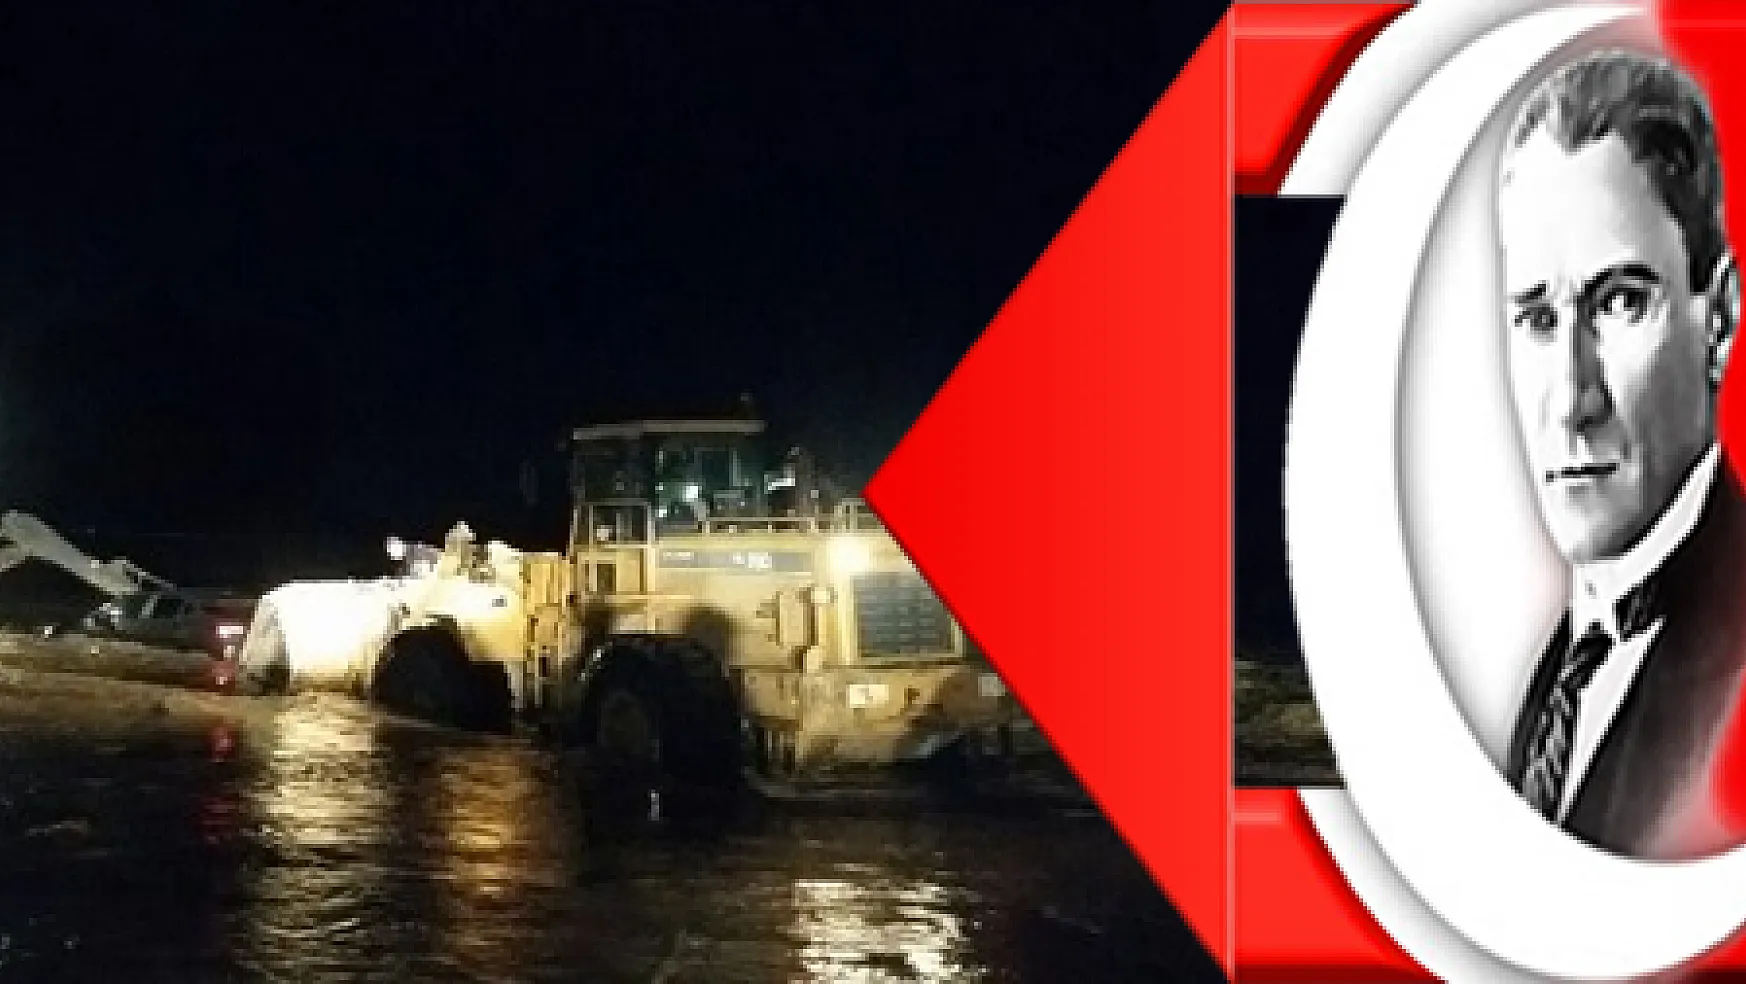 Muğla'da araç denize sürüklendi: 1 ölü, 1 kayıp